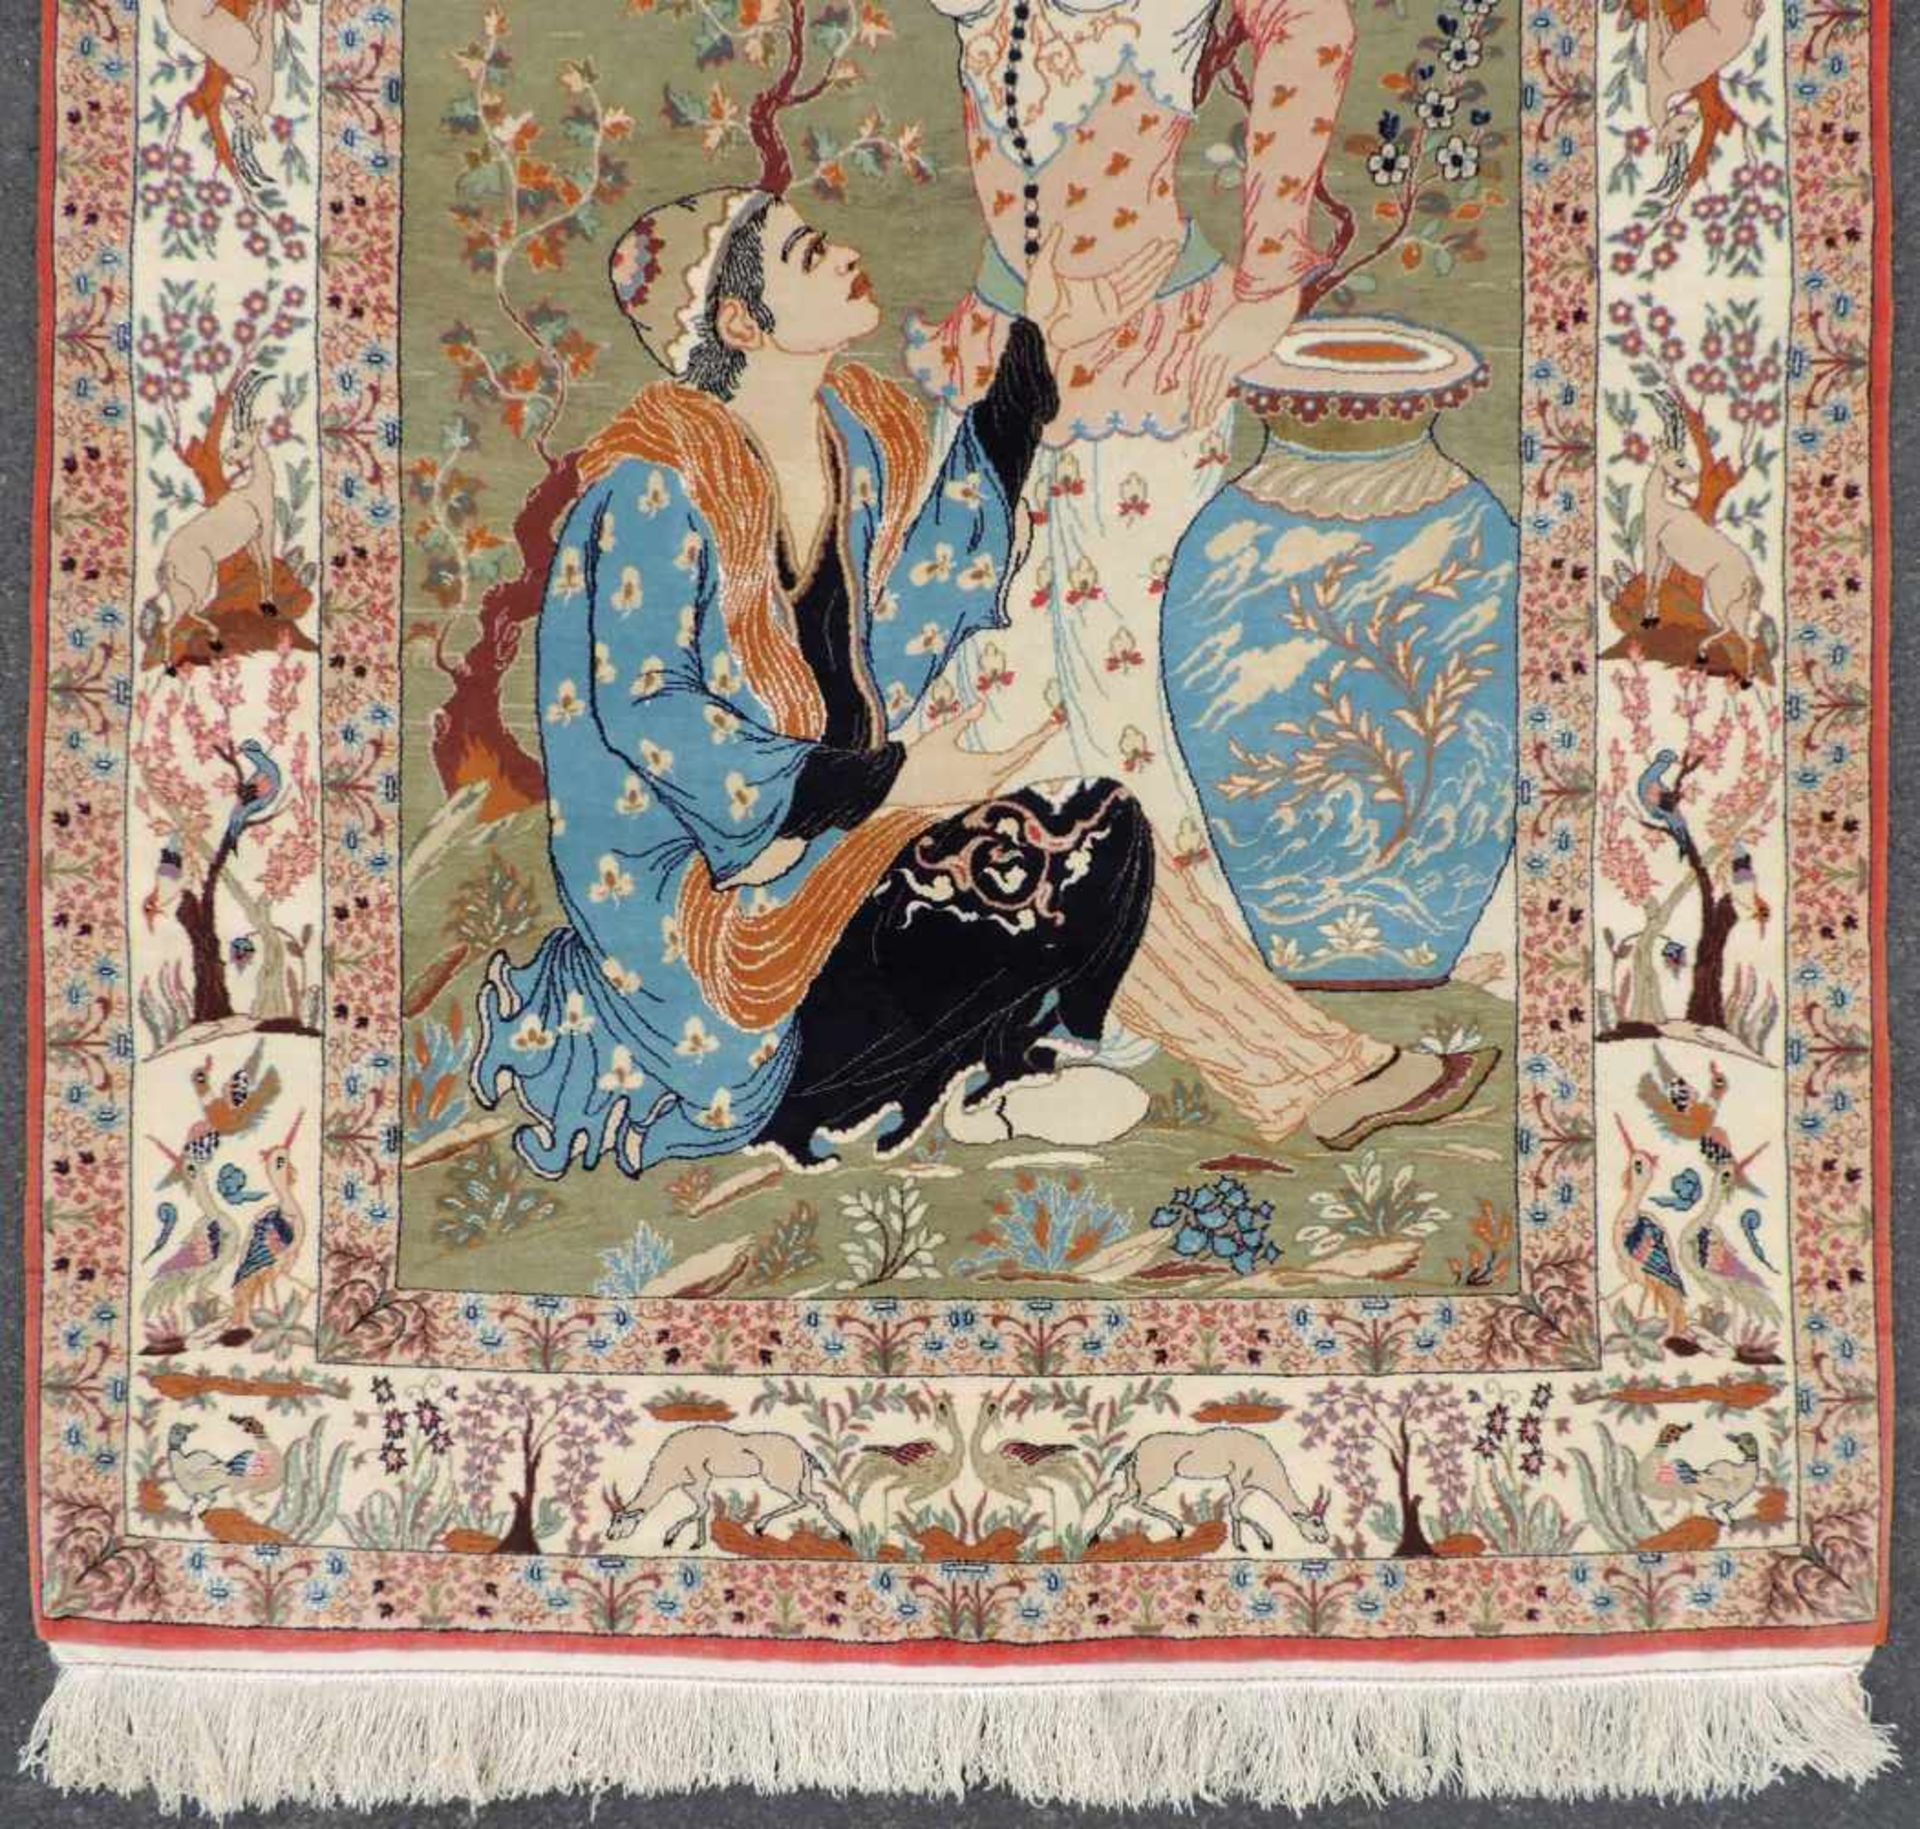 Isfahan Bildteppich. Persien. Iran. Selten feine Knüpfung. 160 cm x 105 cm. Handgeknüpft. - Image 2 of 5